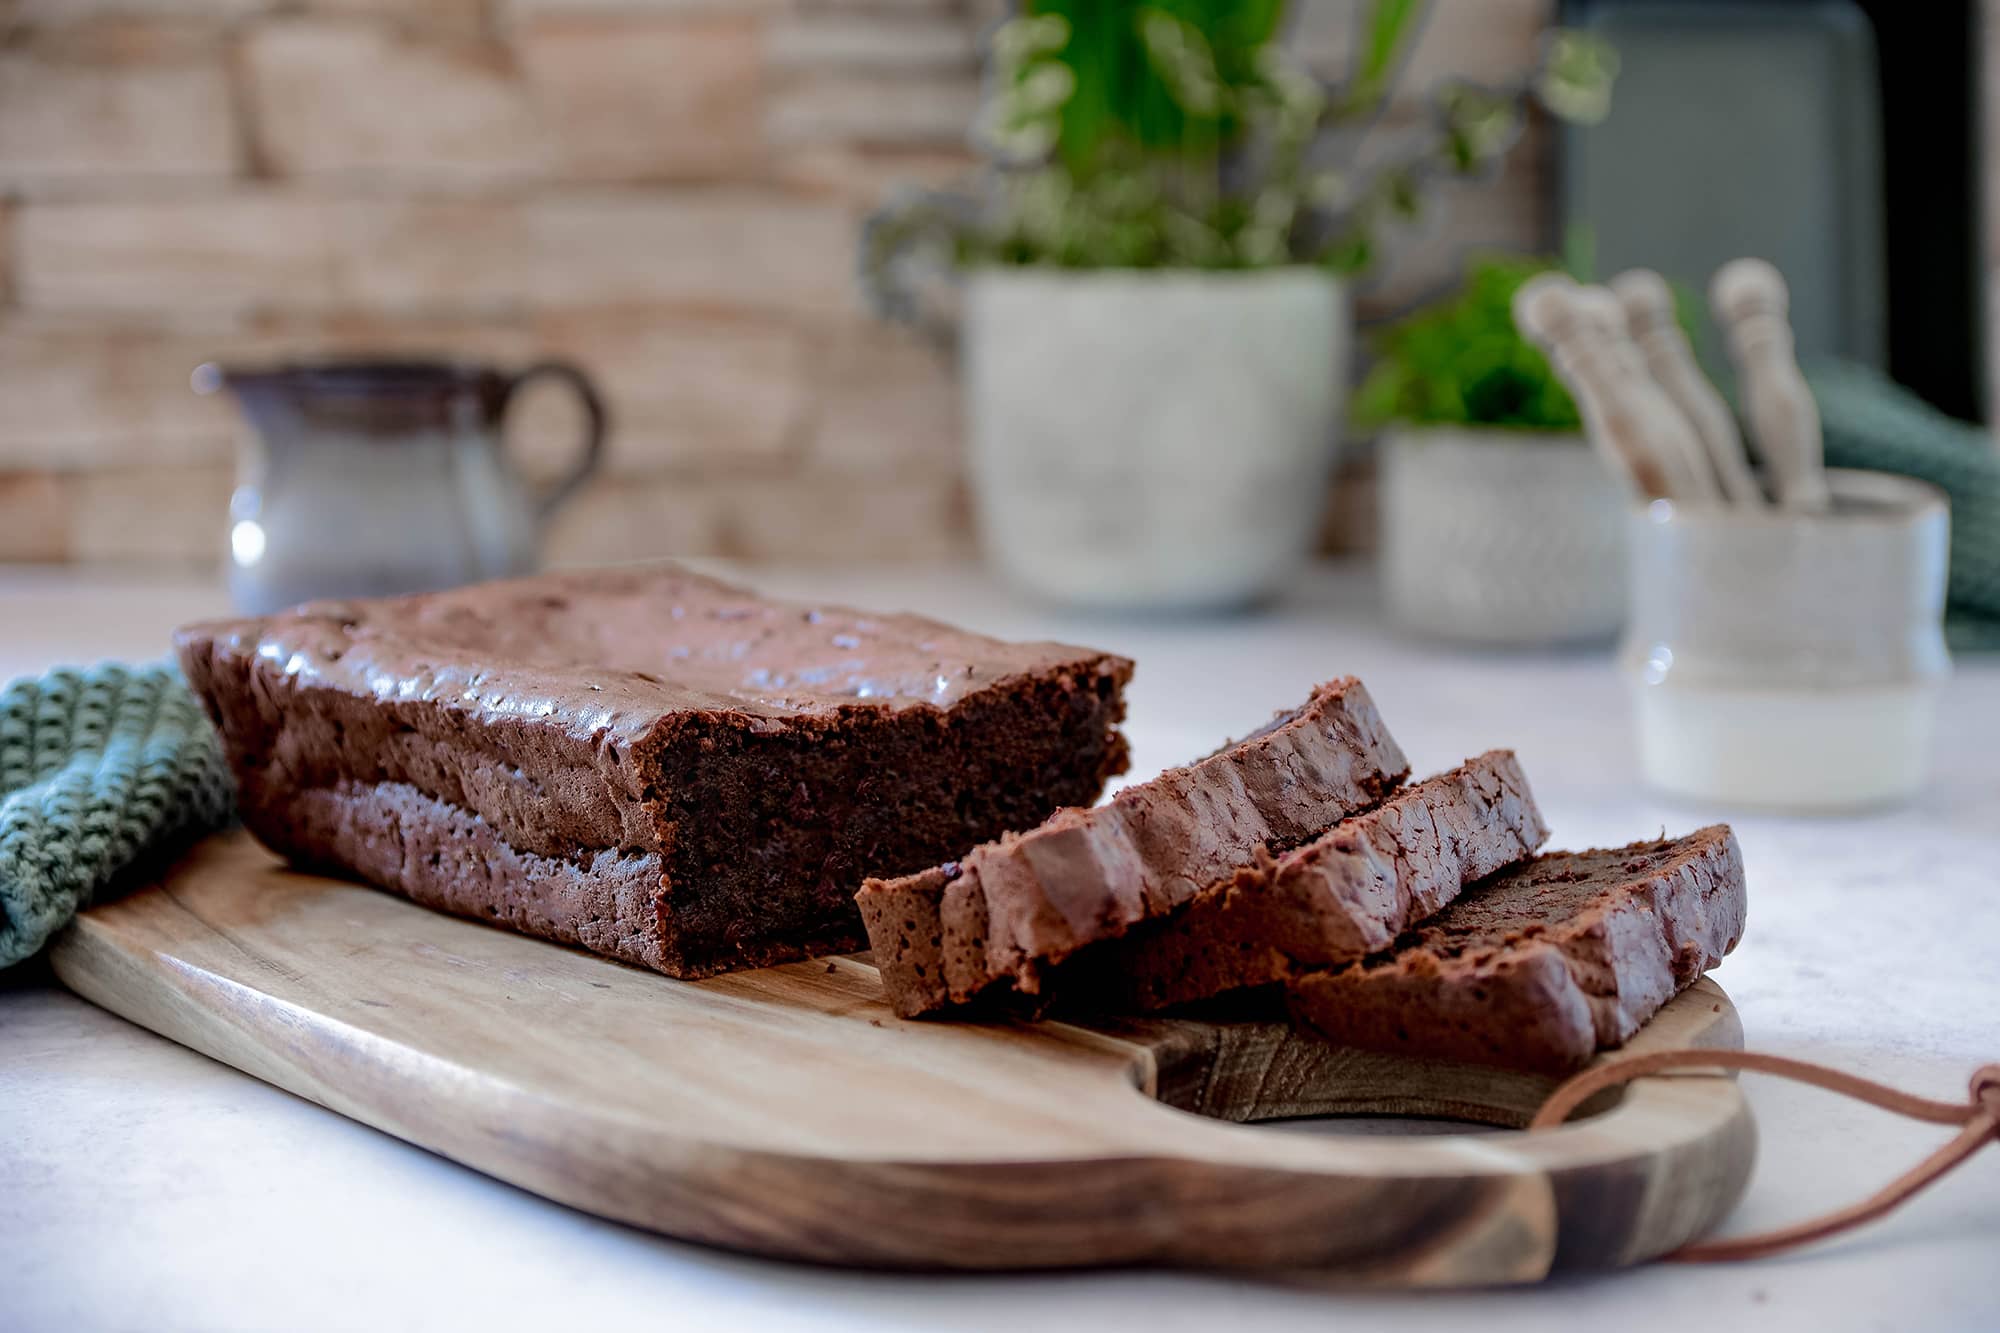 Gesunder Schokoladenkuchen mit Rote Beete (vegan) - Home and Herbs